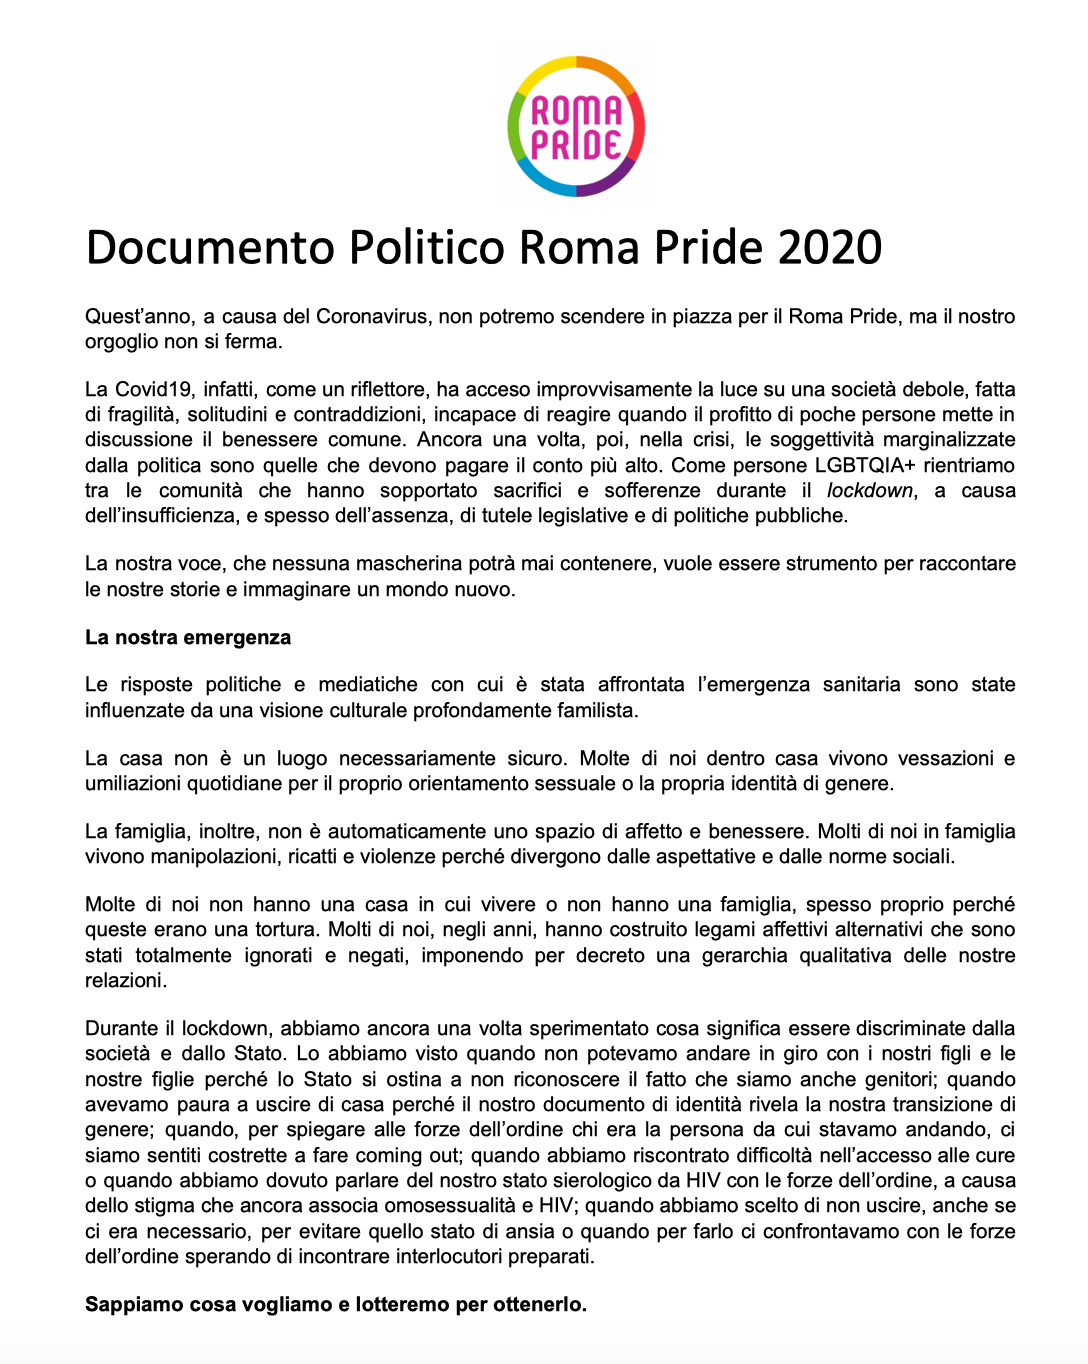 Roma Pride 2020, il Coronavirus ferma la parata ma non l’orgoglio - documento politico, spot e manifesto - Schermata 2020 06 13 alle 11.19.50 - Gay.it